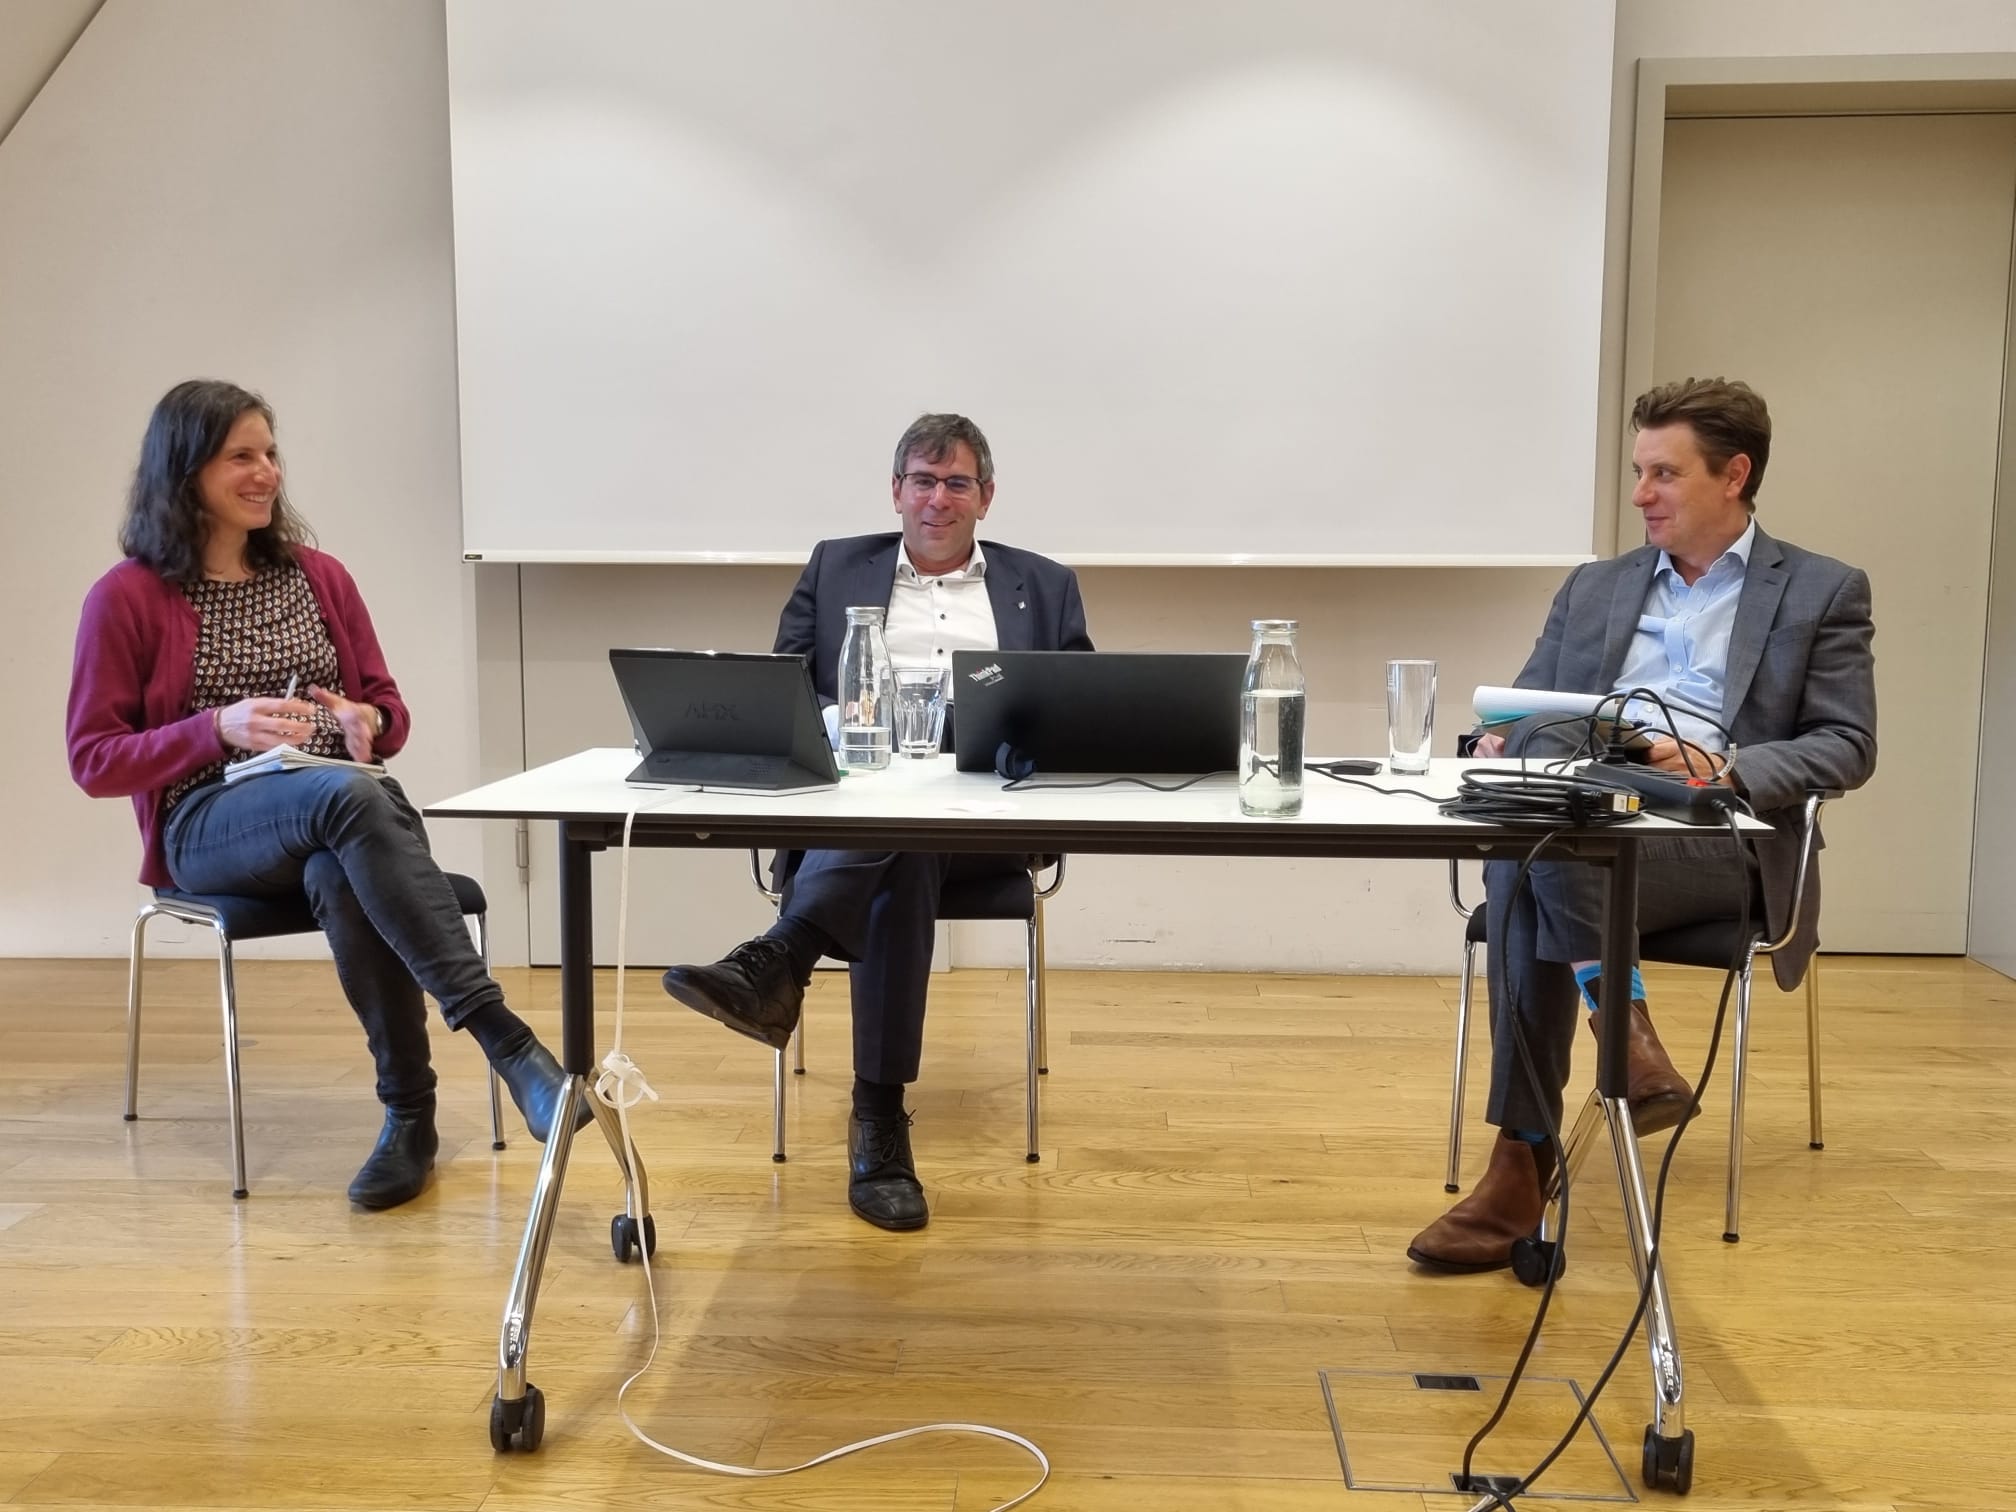 Légende photo ASSAF - de gauche à droite : Anna Beerli OFAG, David Ruetschi ASSAF, Dominik Klauser, Directeur Plateforme SAI